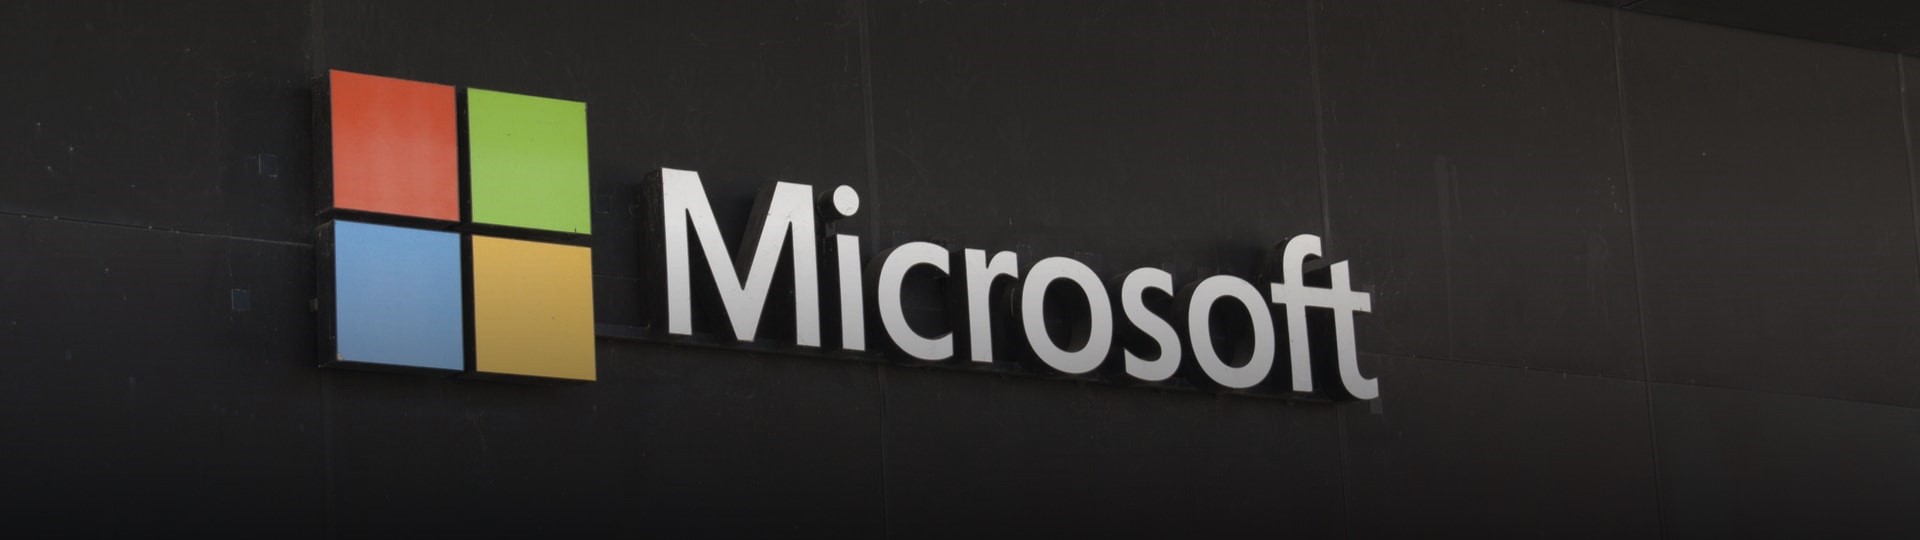 Microsoft zpřístupnil všem uživatelům přihlašování k účtům bez hesla